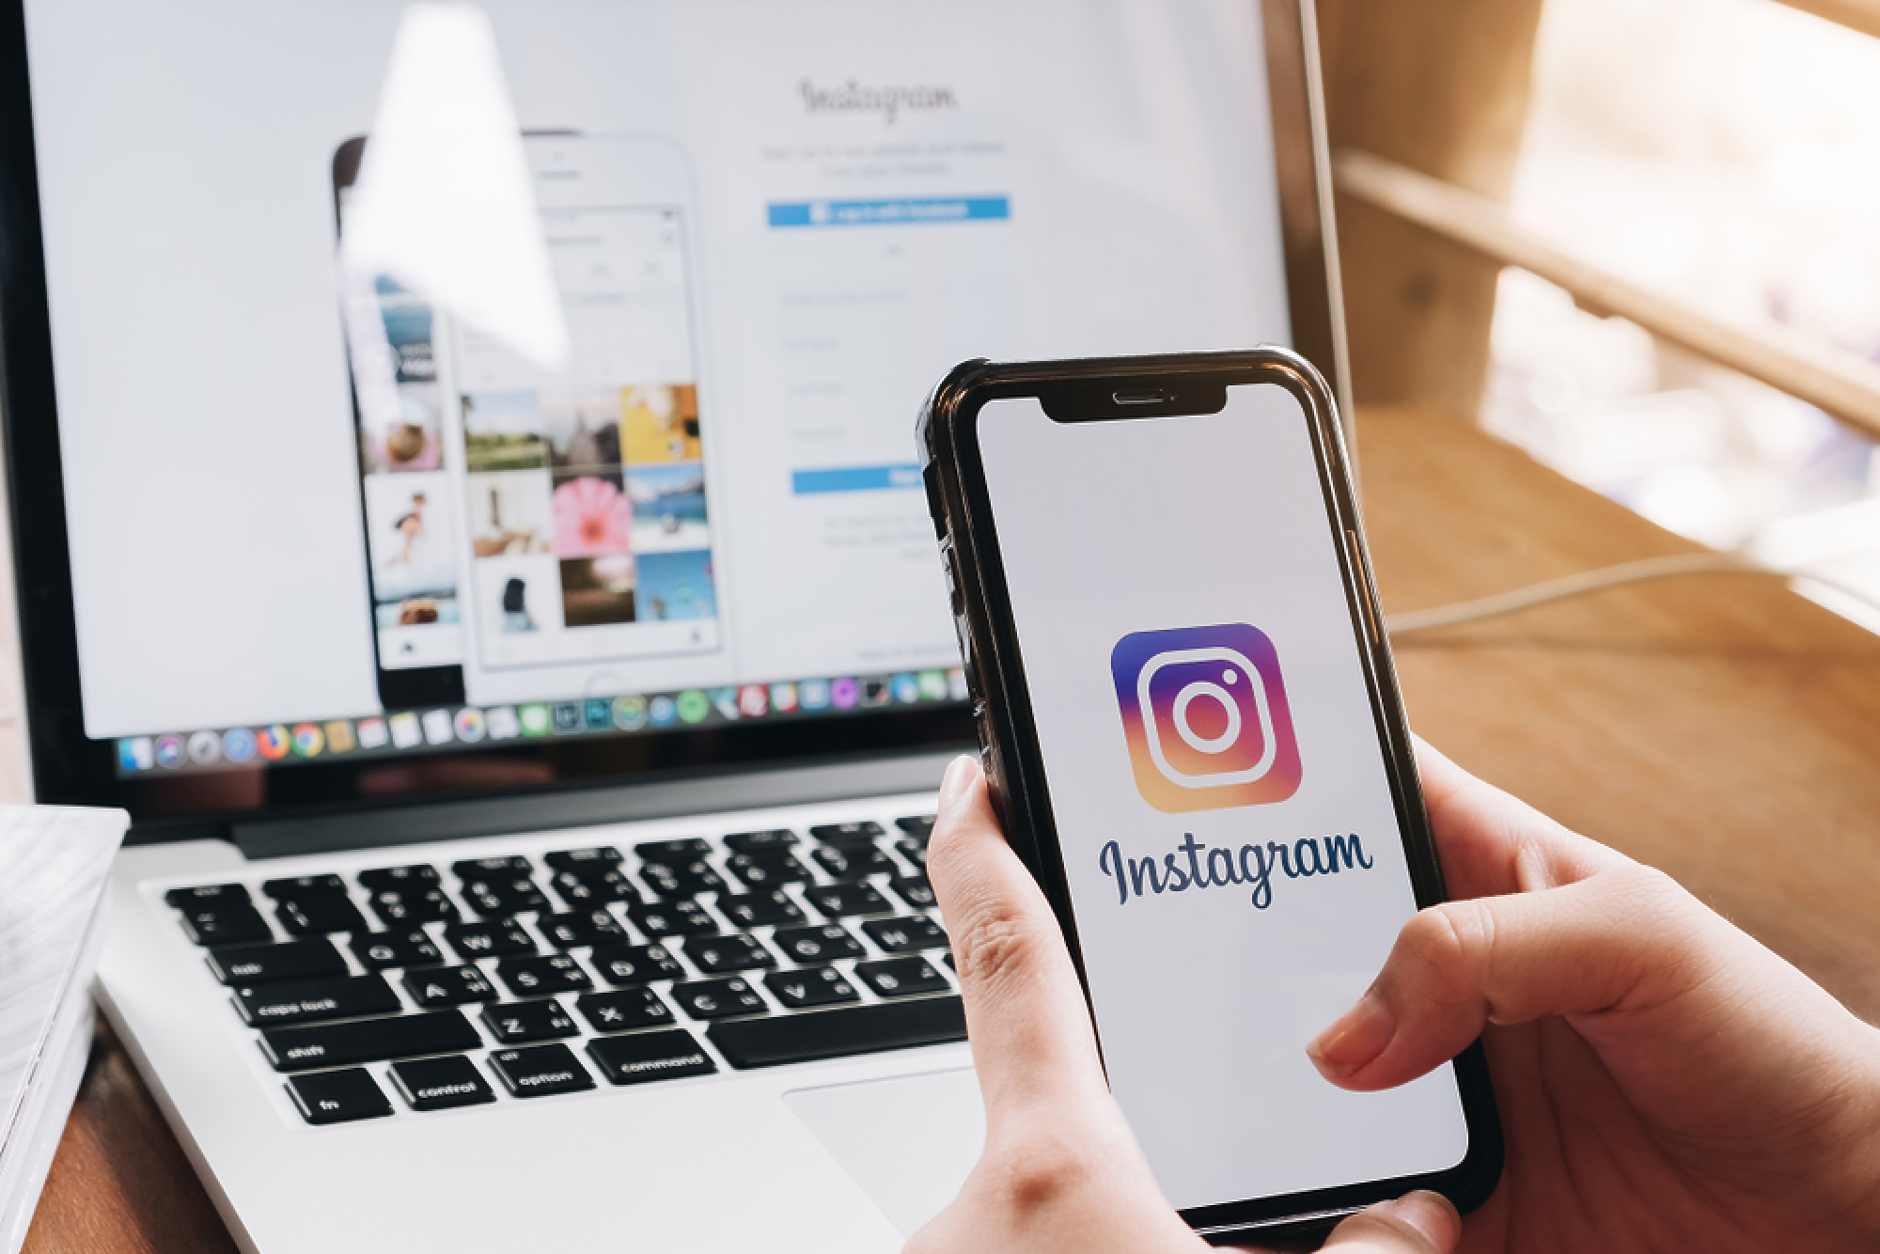  Осем съвета за оптимизиране на вашия професионален профил в Instagram